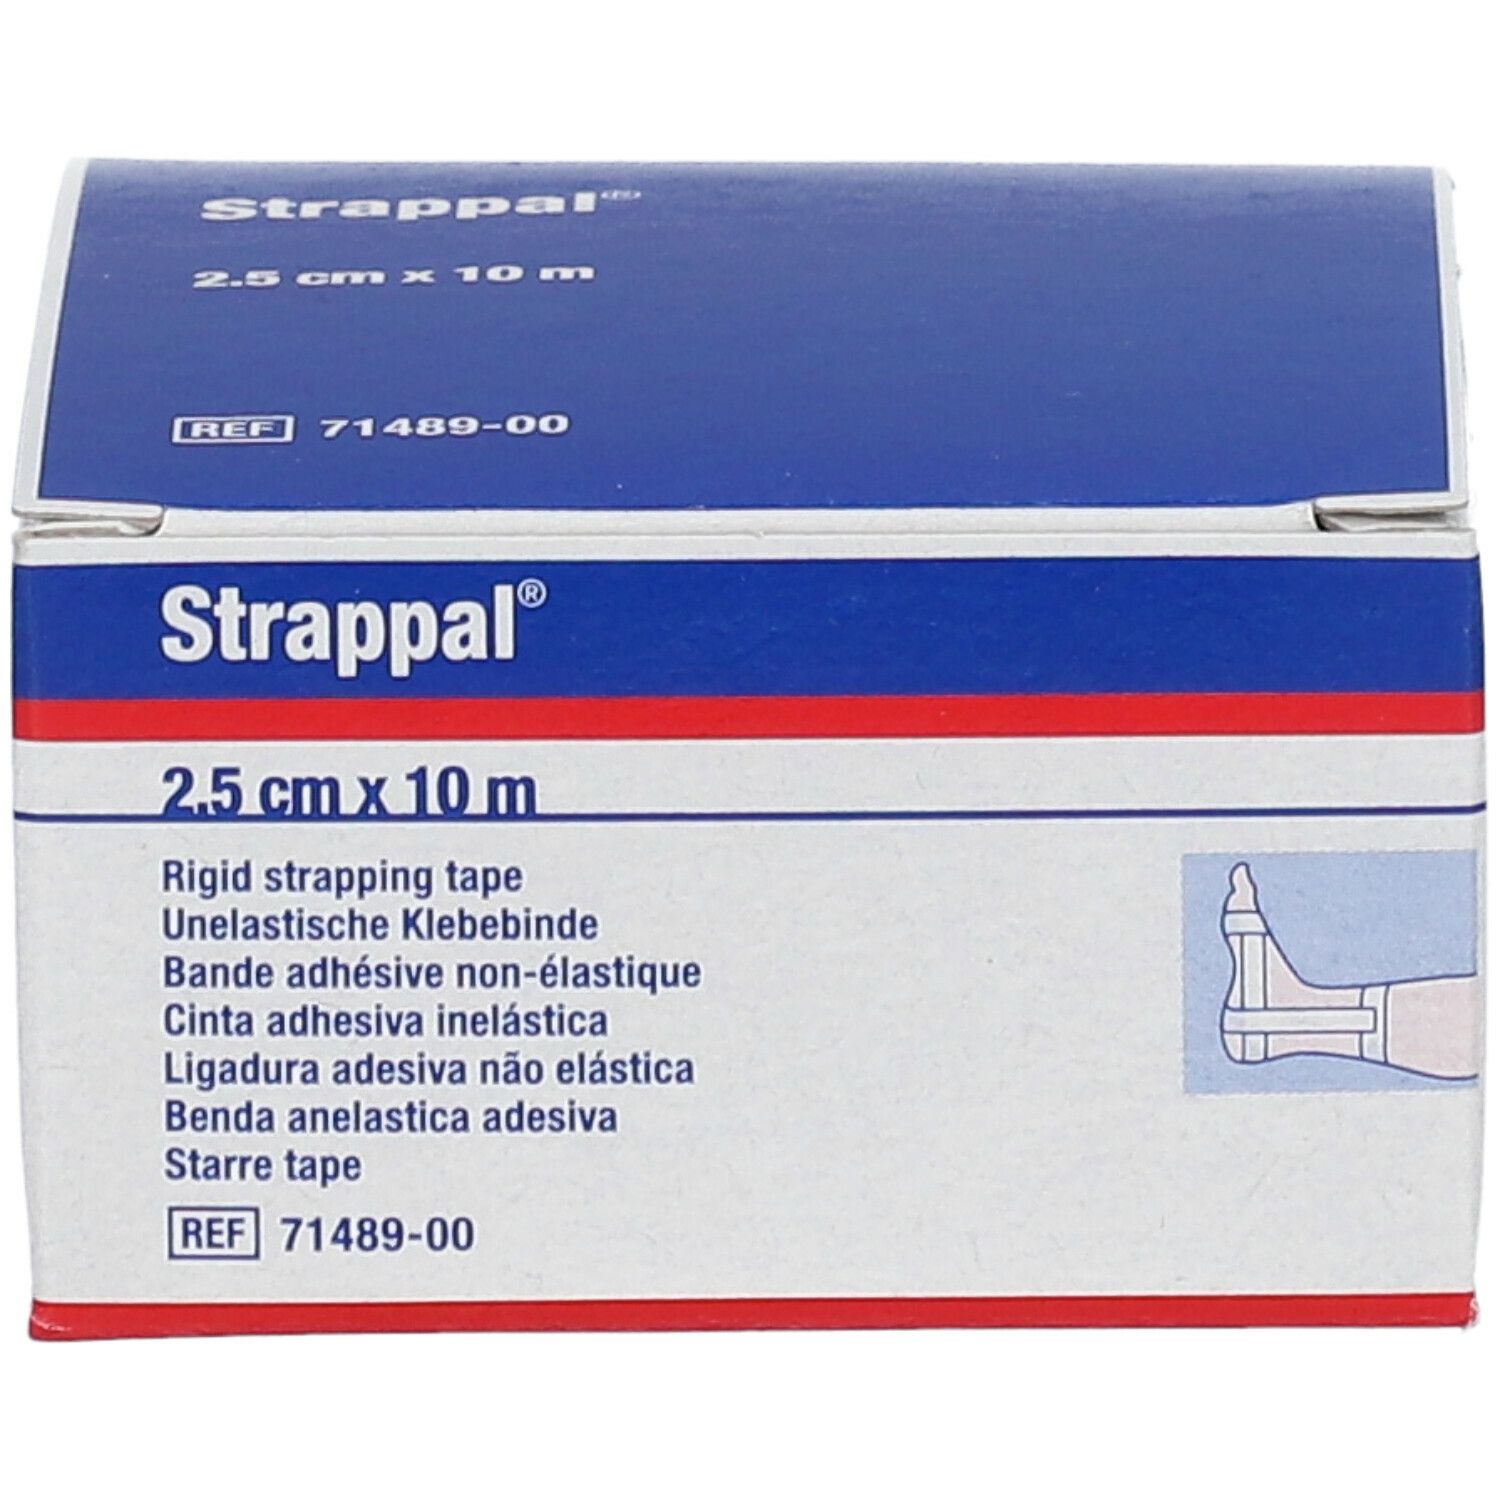 Strappal® Benda Anelastica Adesiva 2,5 cm x 10 m